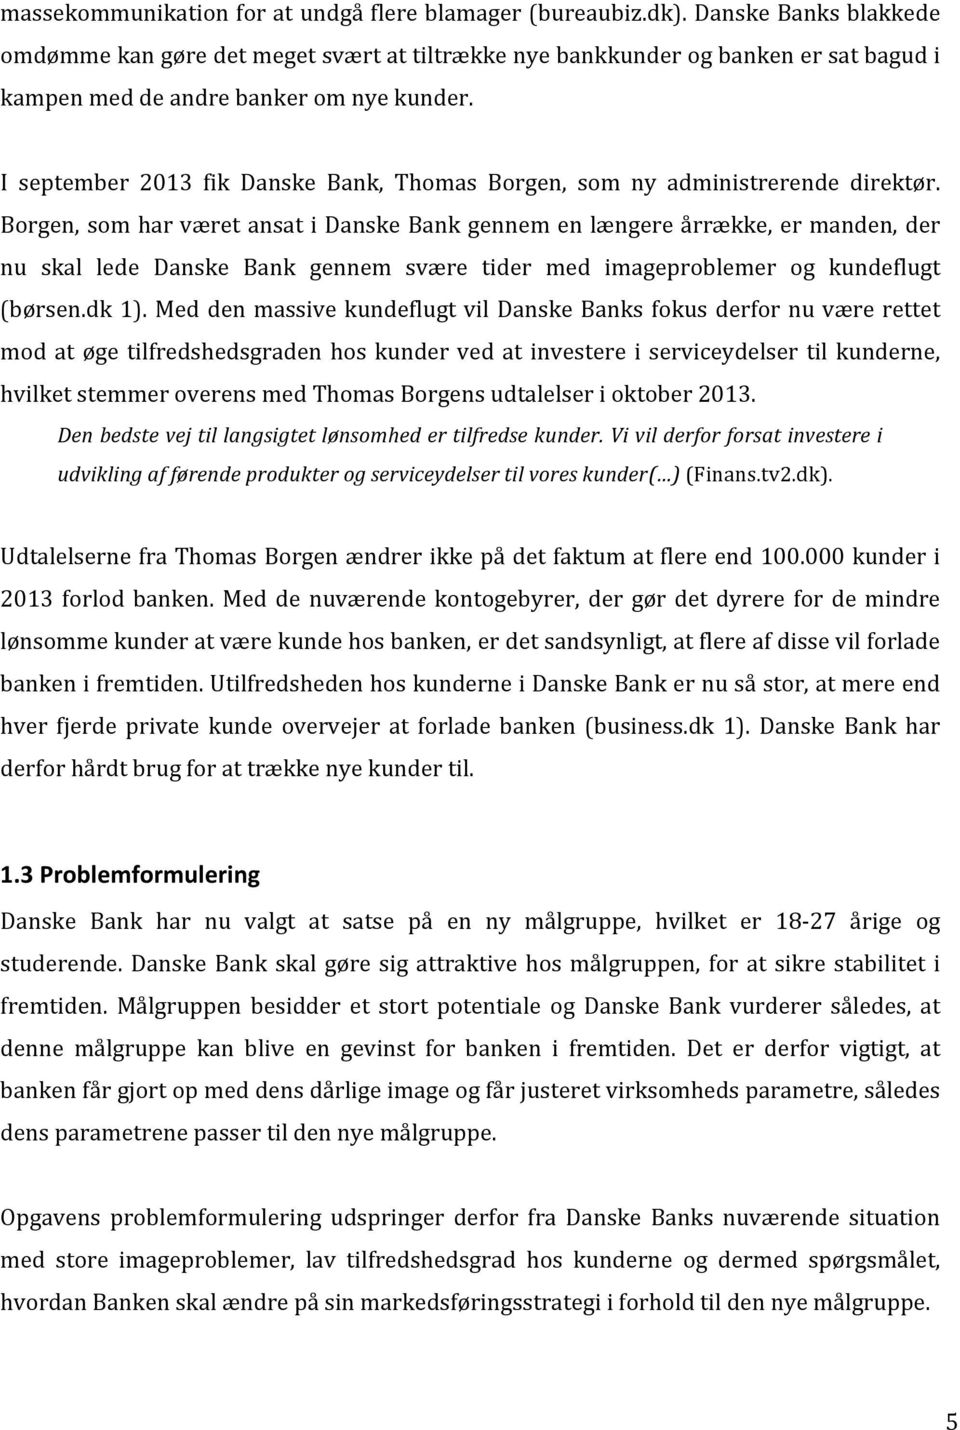 I september 2013 fik Danske Bank, Thomas Borgen, som ny administrerende direktør.